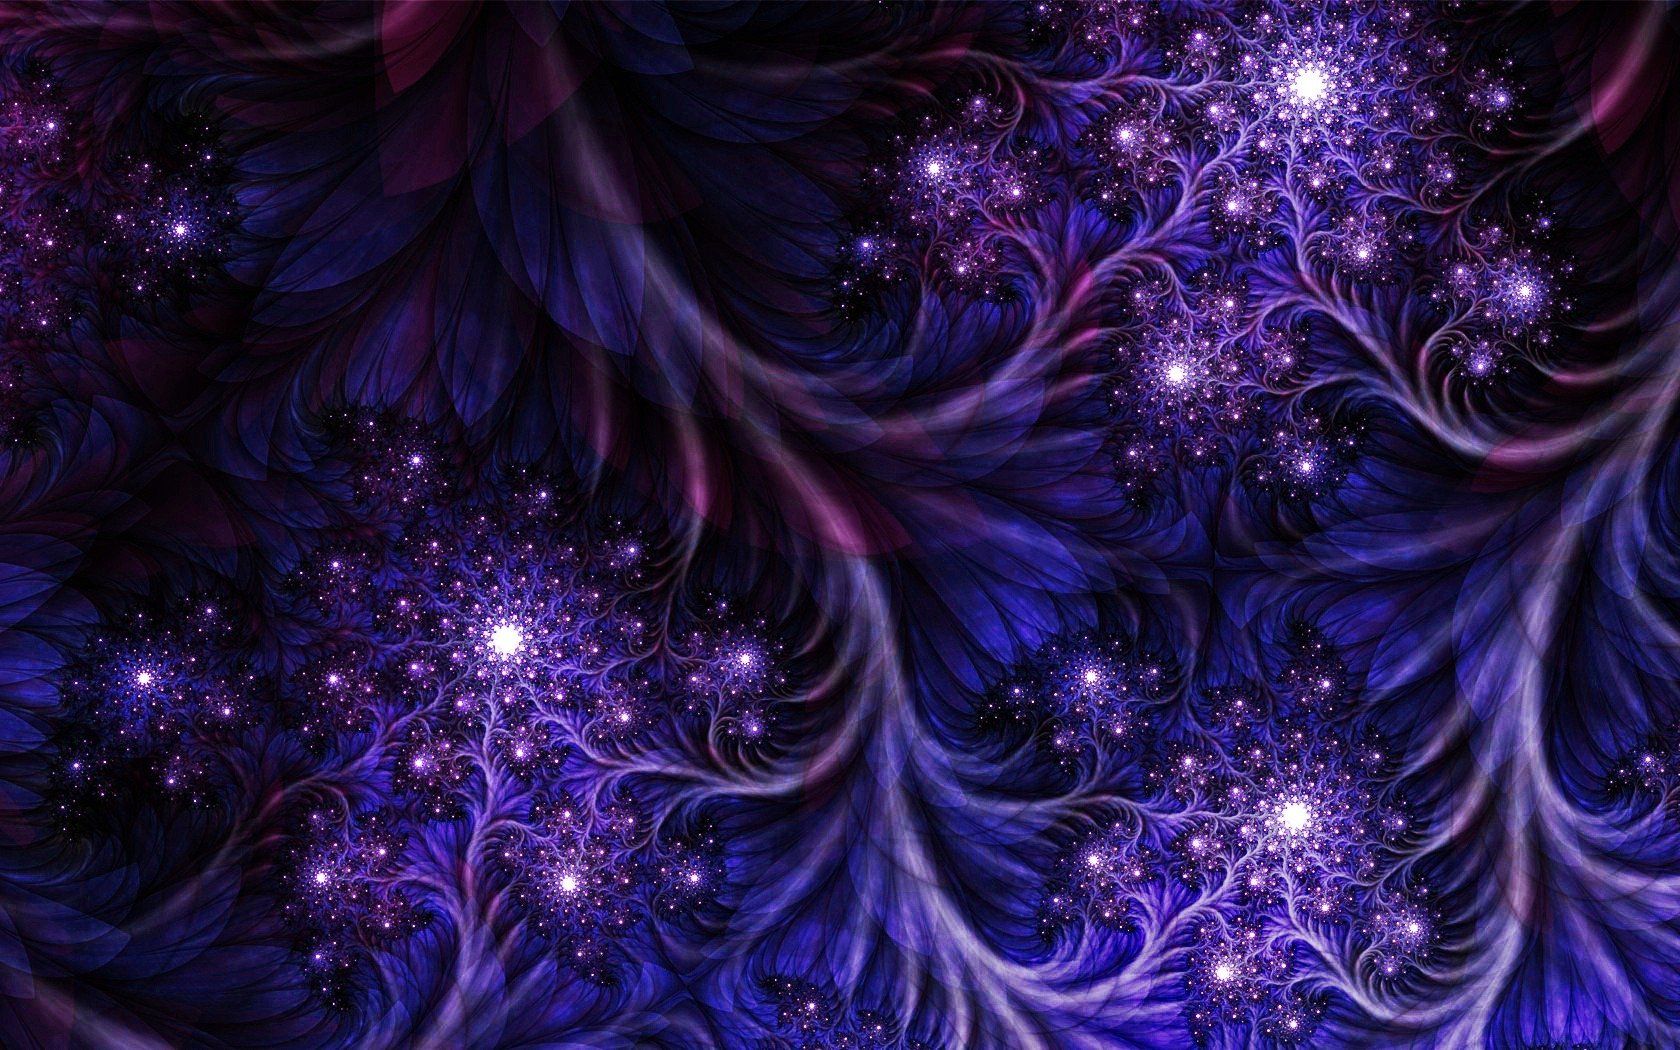 Abstract dark purple fractal wallpaper .wallpaperup.com